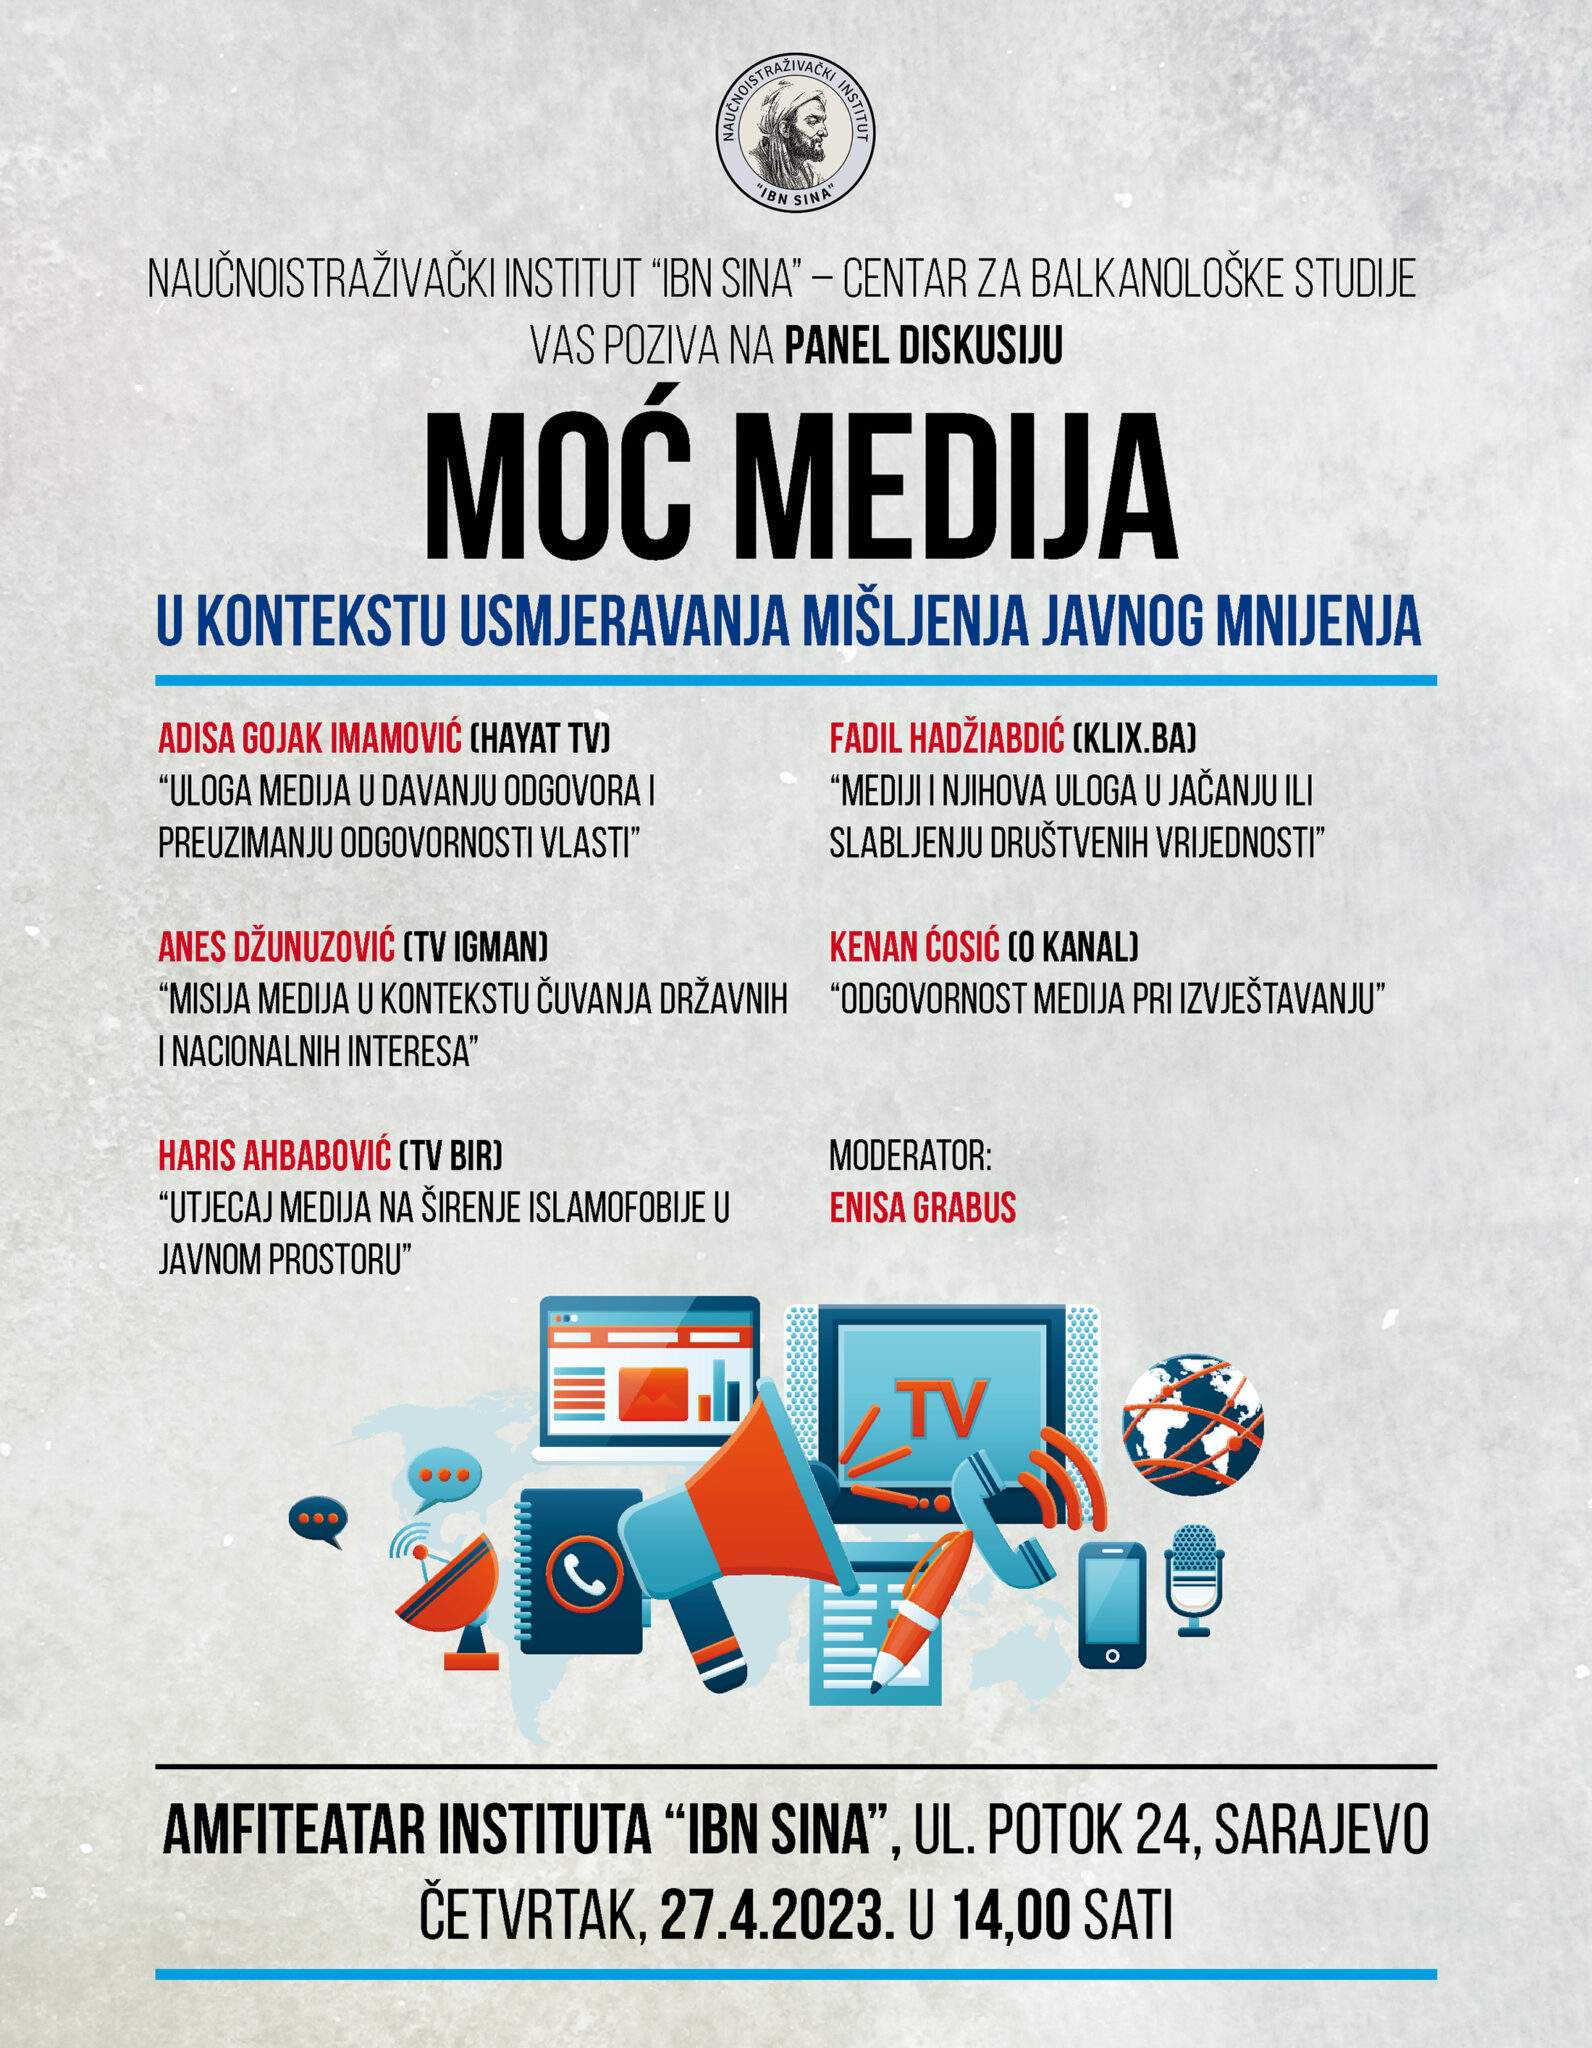 Panel-diskusija-Moc-medija-POZIVNICA-1-1592x2048.jpg - Panel-diskusija: Moć medija u kontekstu usmjeravanja mišljenja javnog mnijenja u organizaciji Instituta 